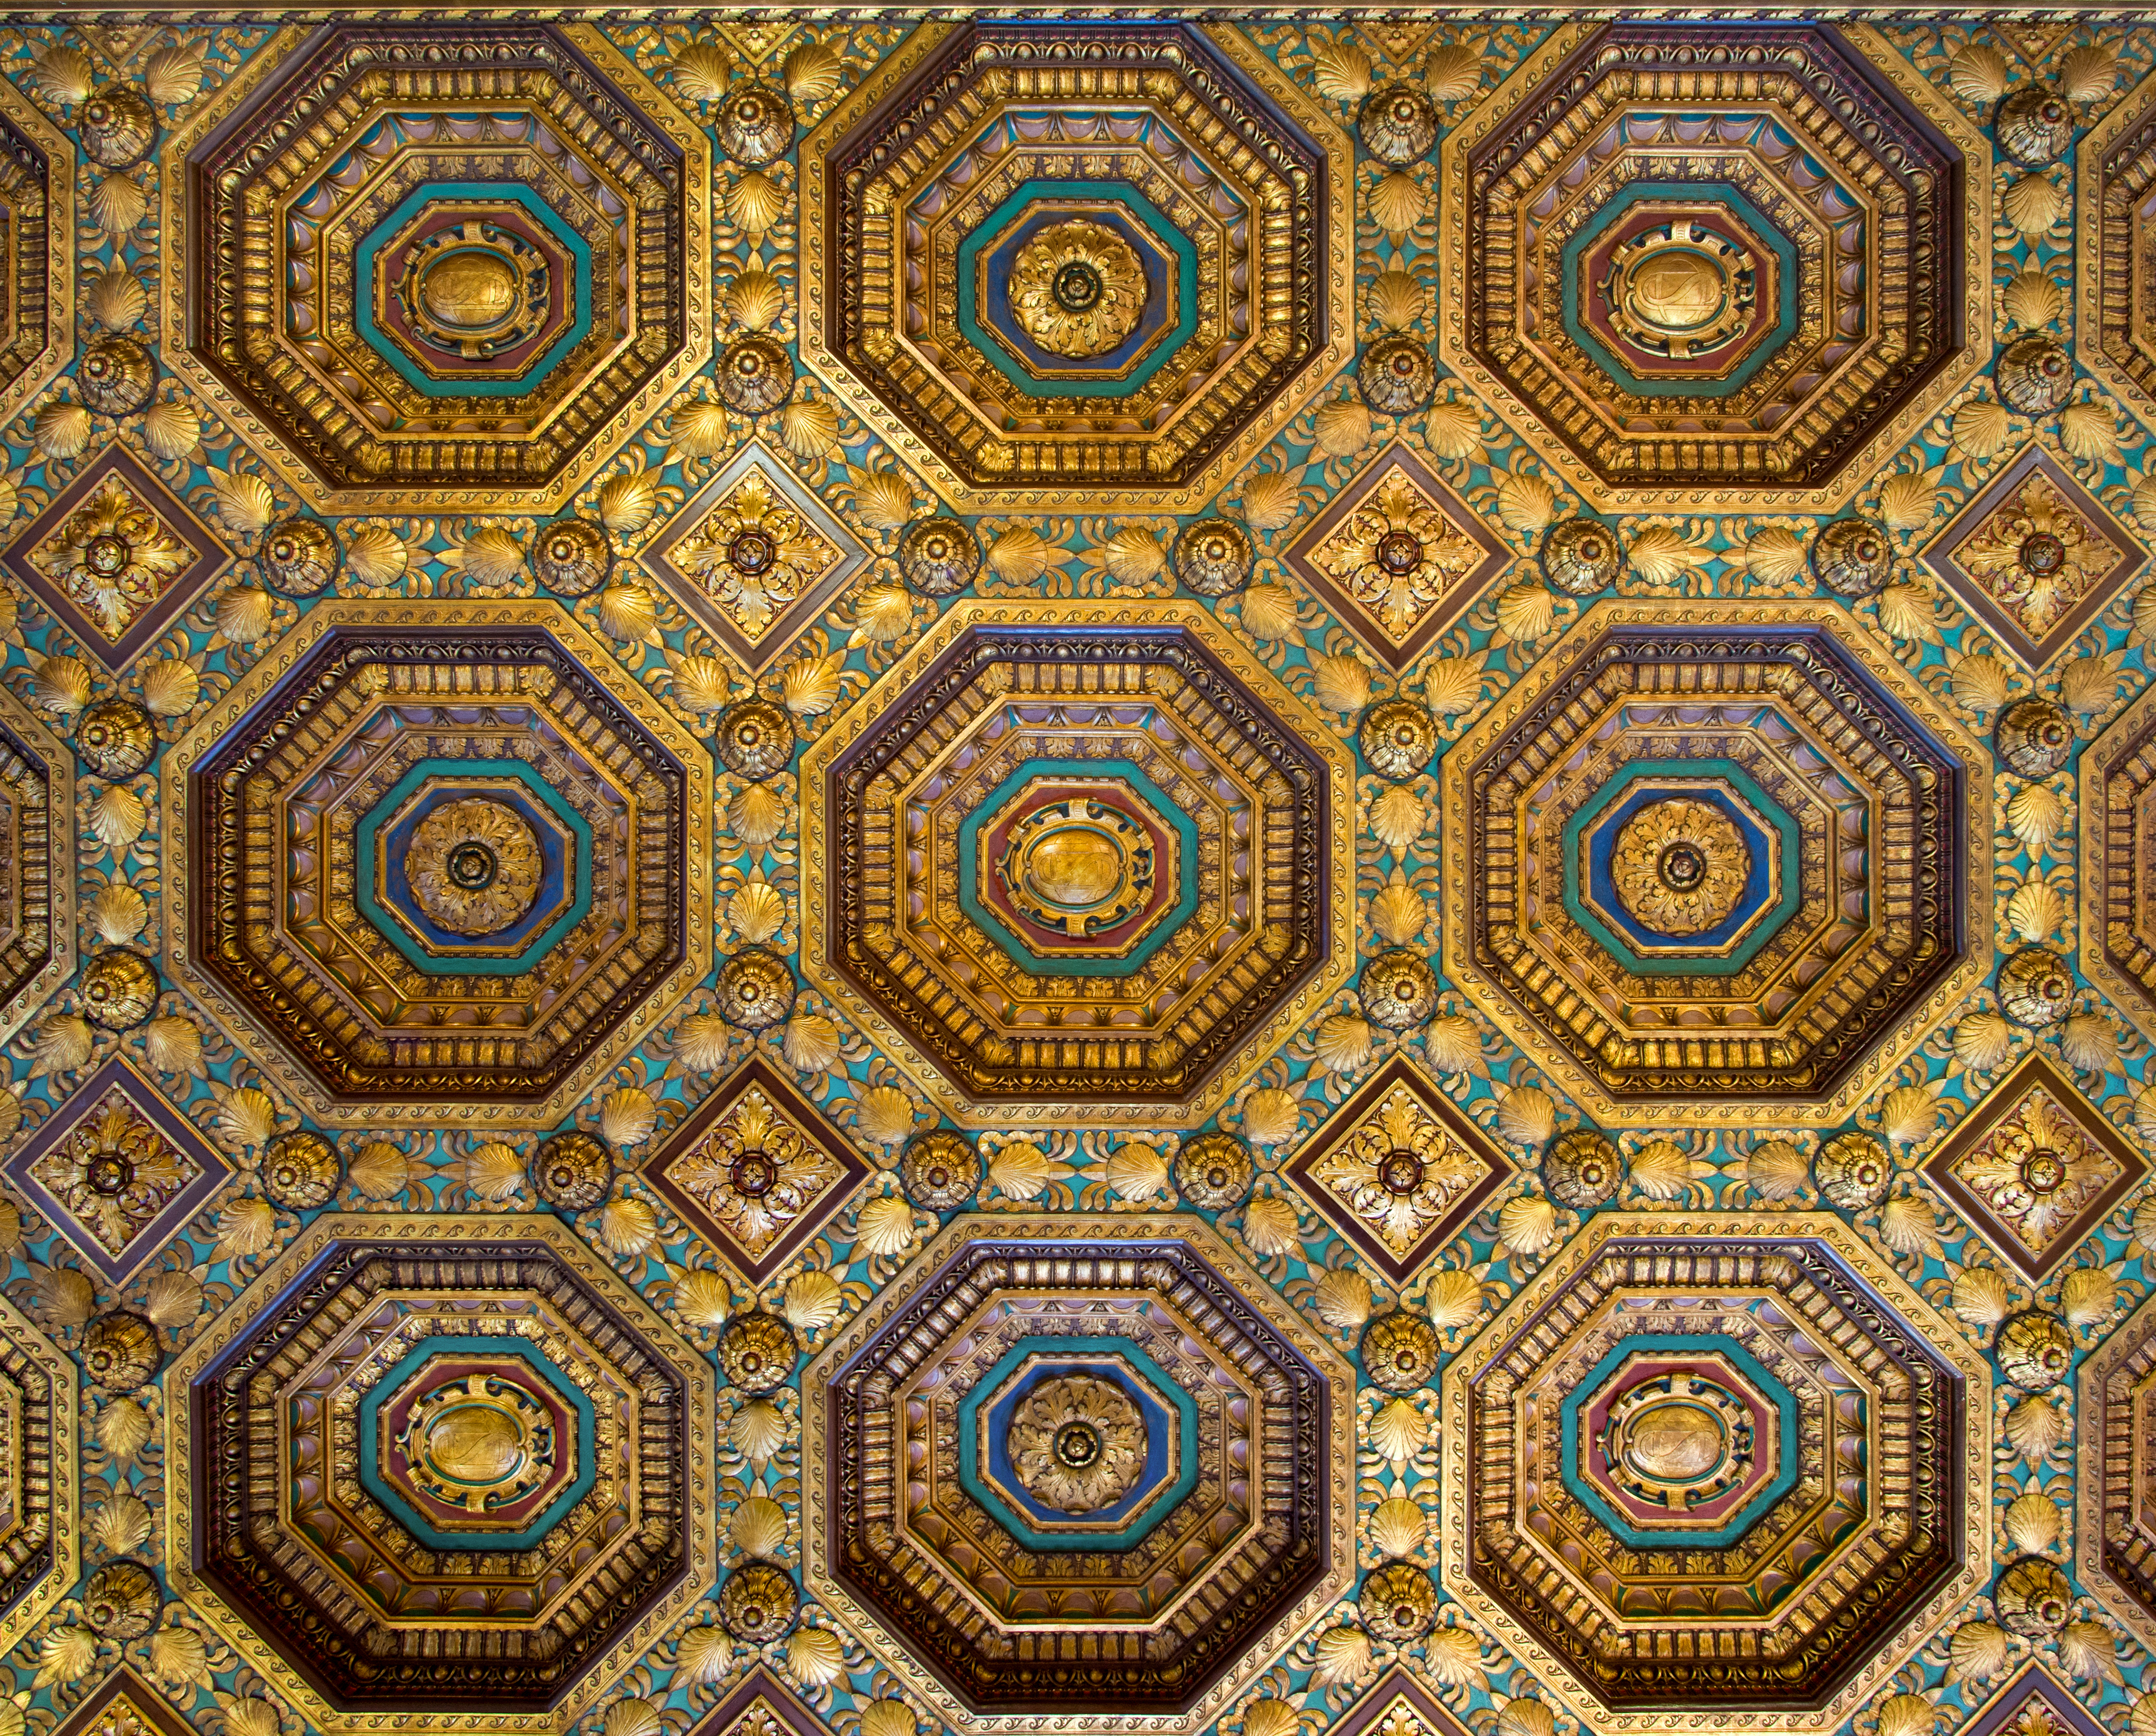 Alexander Hamilton Custom House Collector's Room ceiling (40511s)